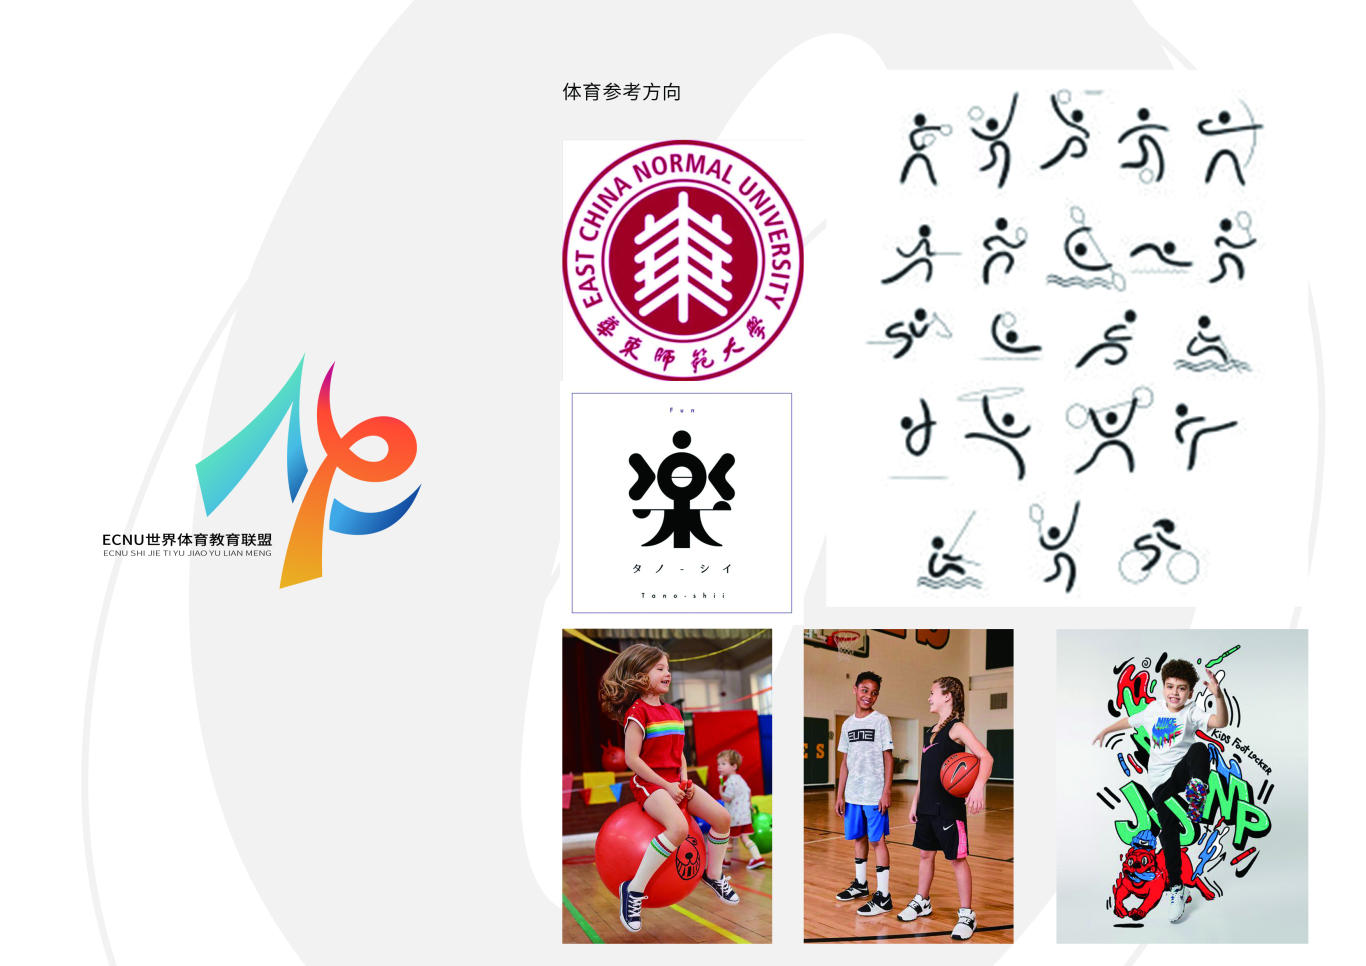 上海华东师范大学附属-世界体育联盟logo设计图1